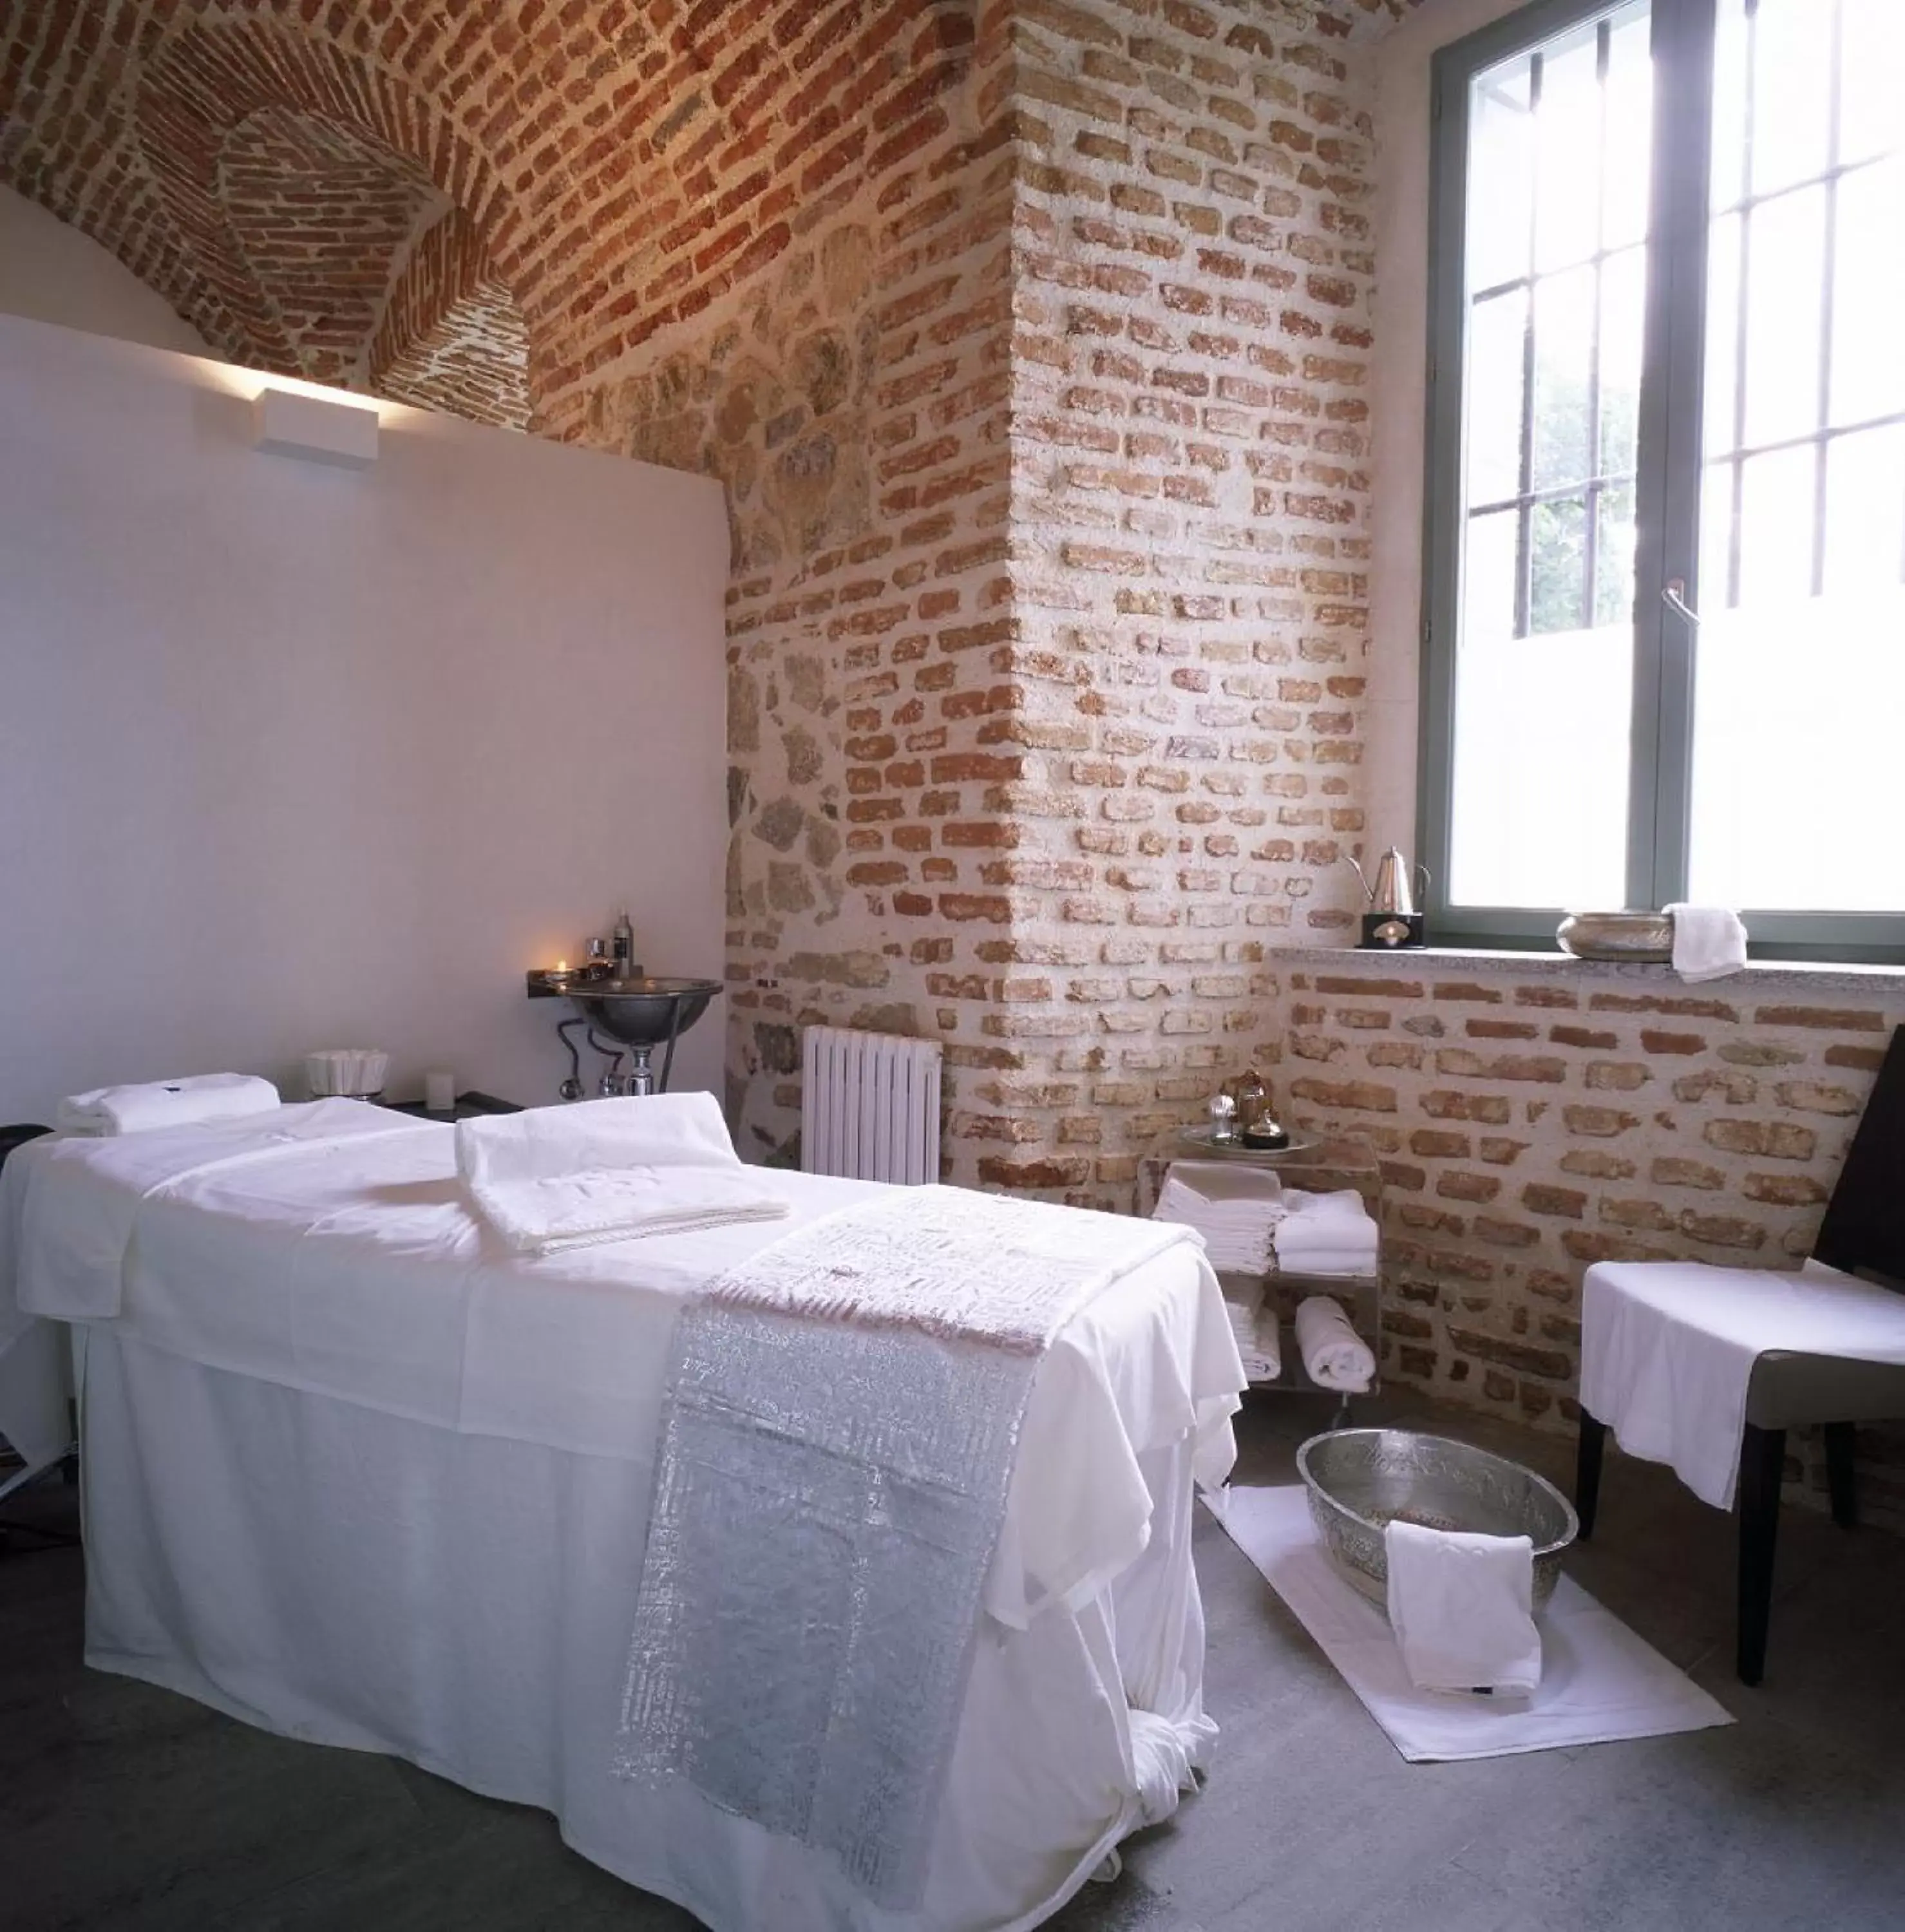 Spa and wellness centre/facilities, Bathroom in Parador de La Granja